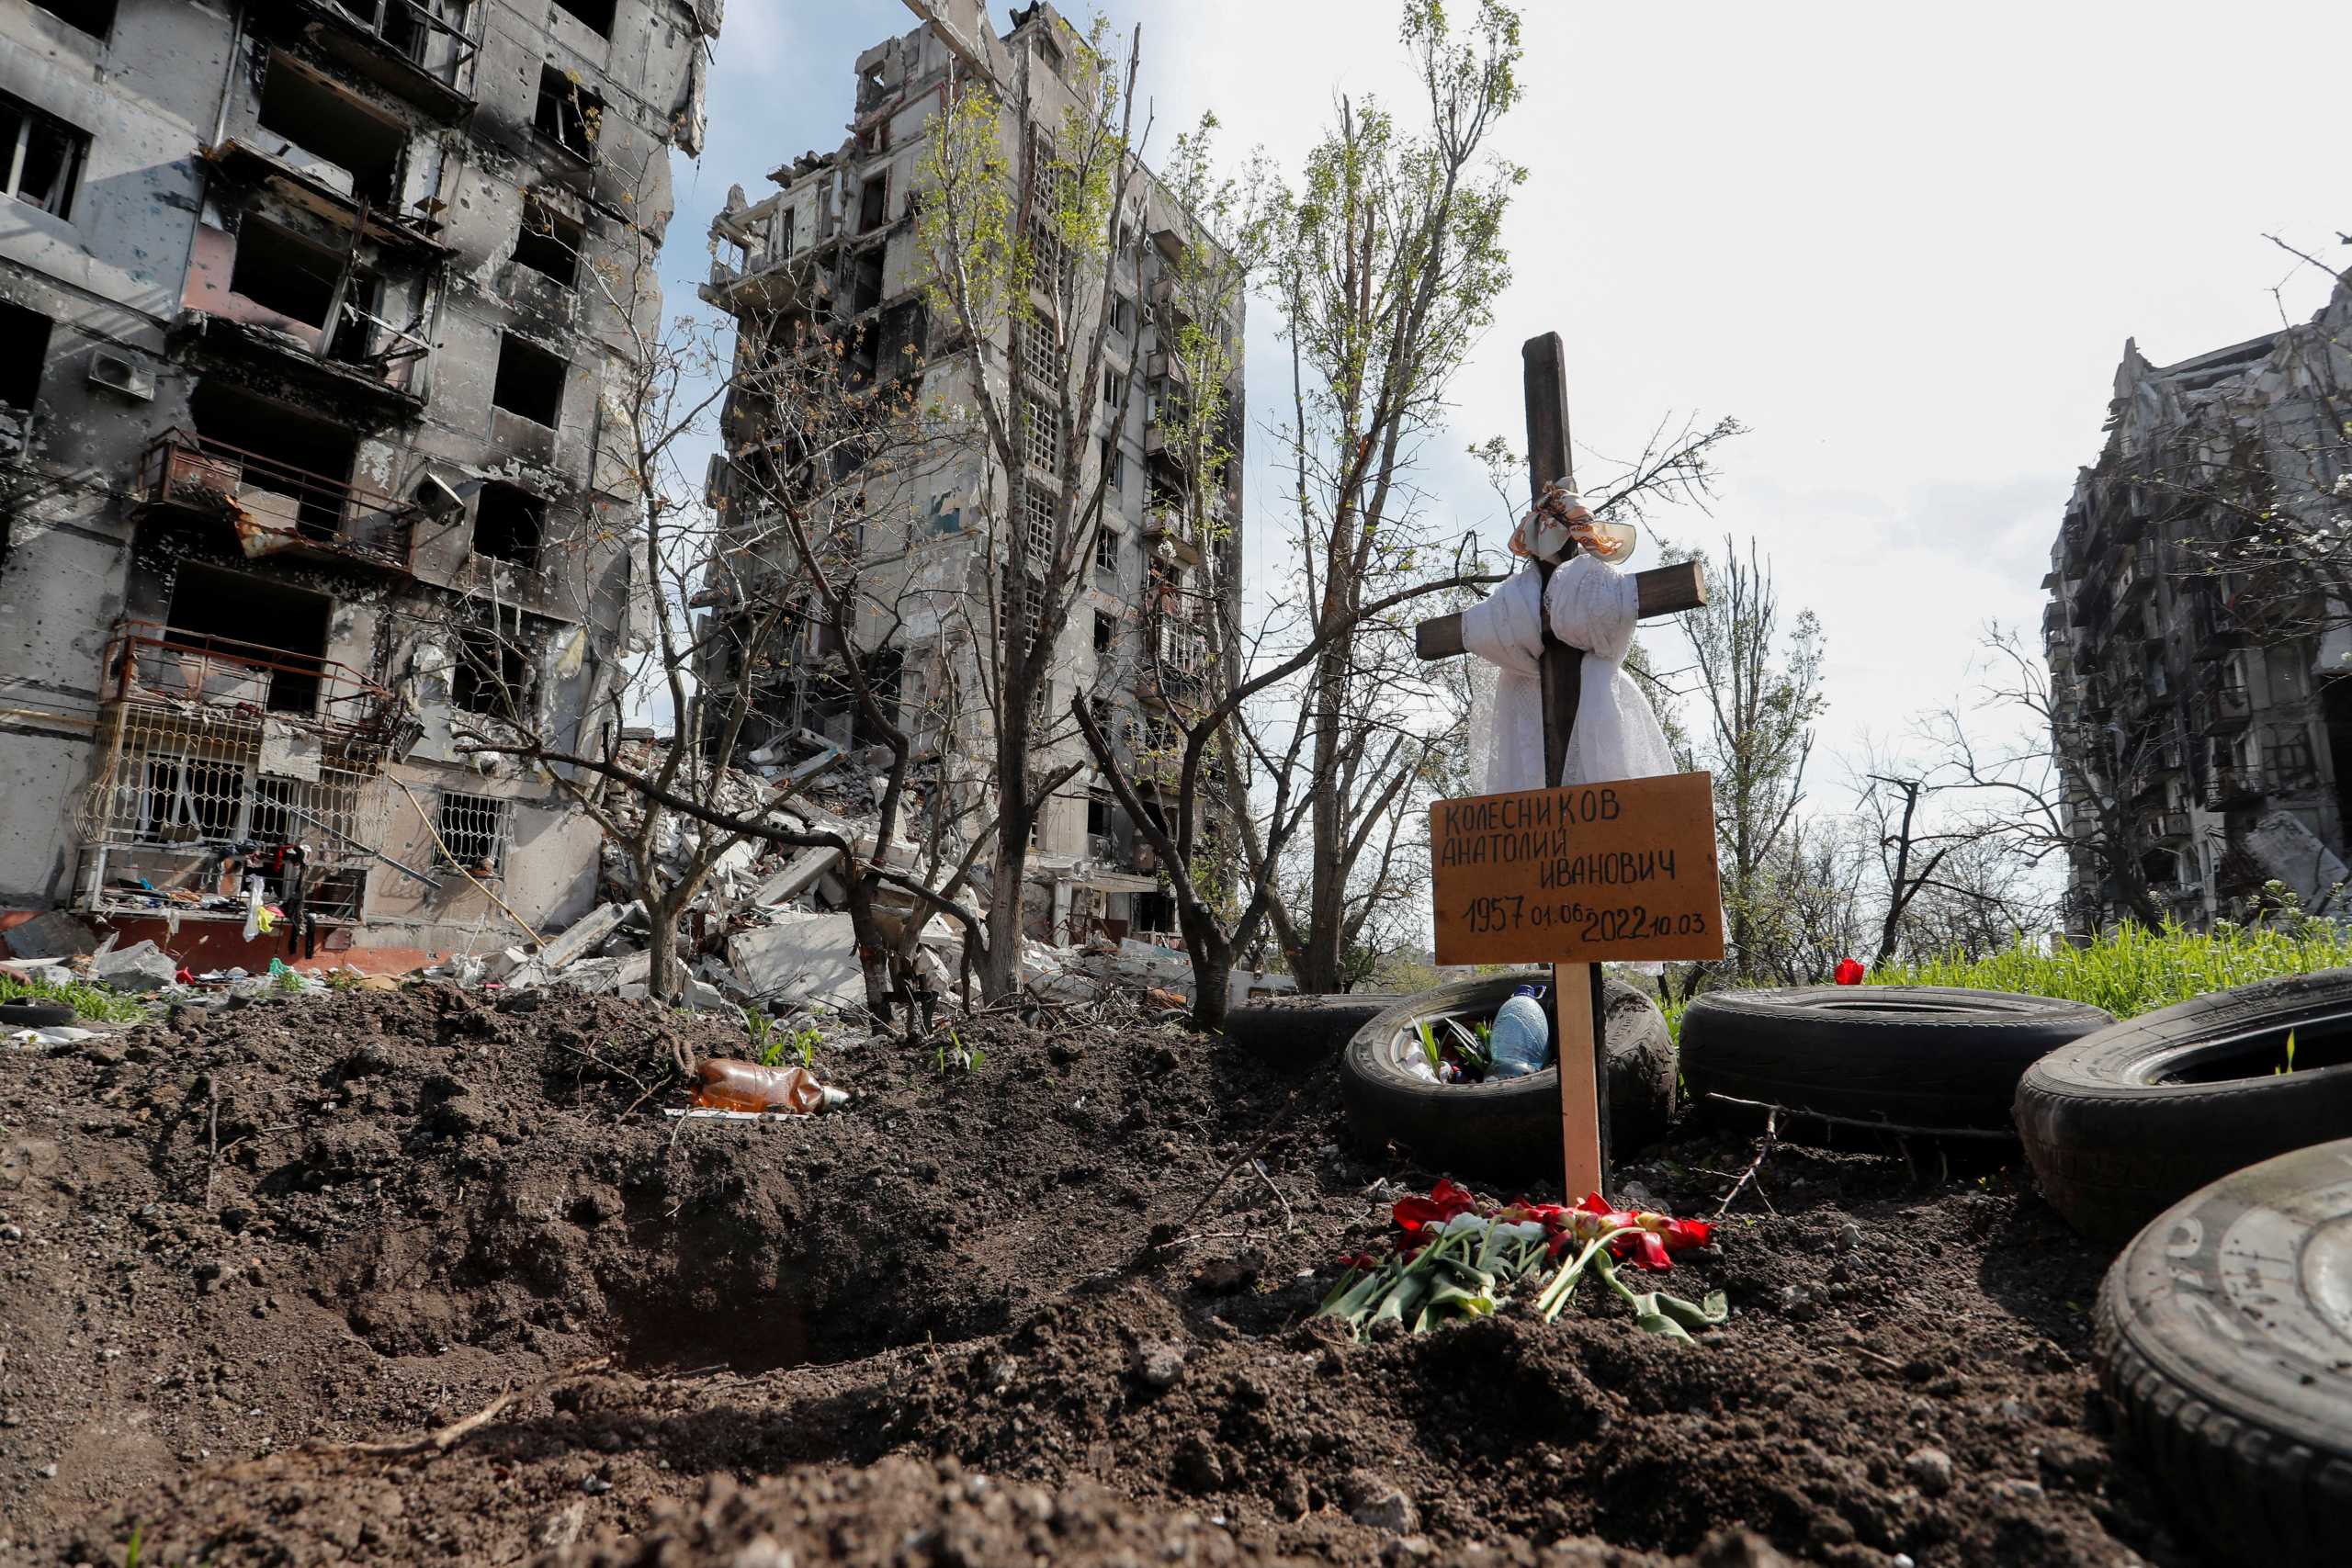 Ουκρανία: 44 πτώματα αμάχων βρέθηκαν σε συντρίμμια κτιρίου που είχε καταστραφεί τον Μάρτιο